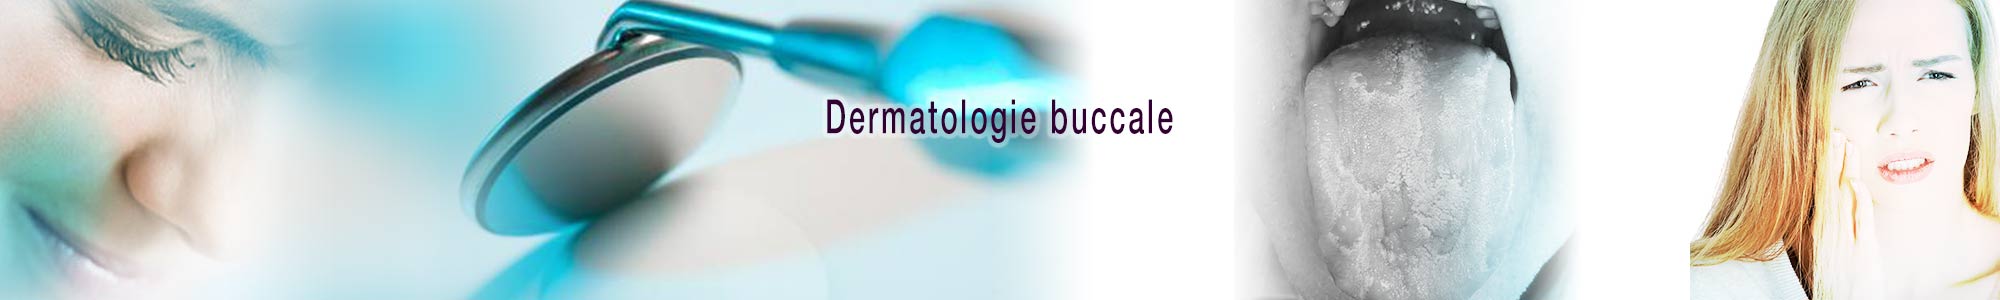 slide-dermatologie-buccale